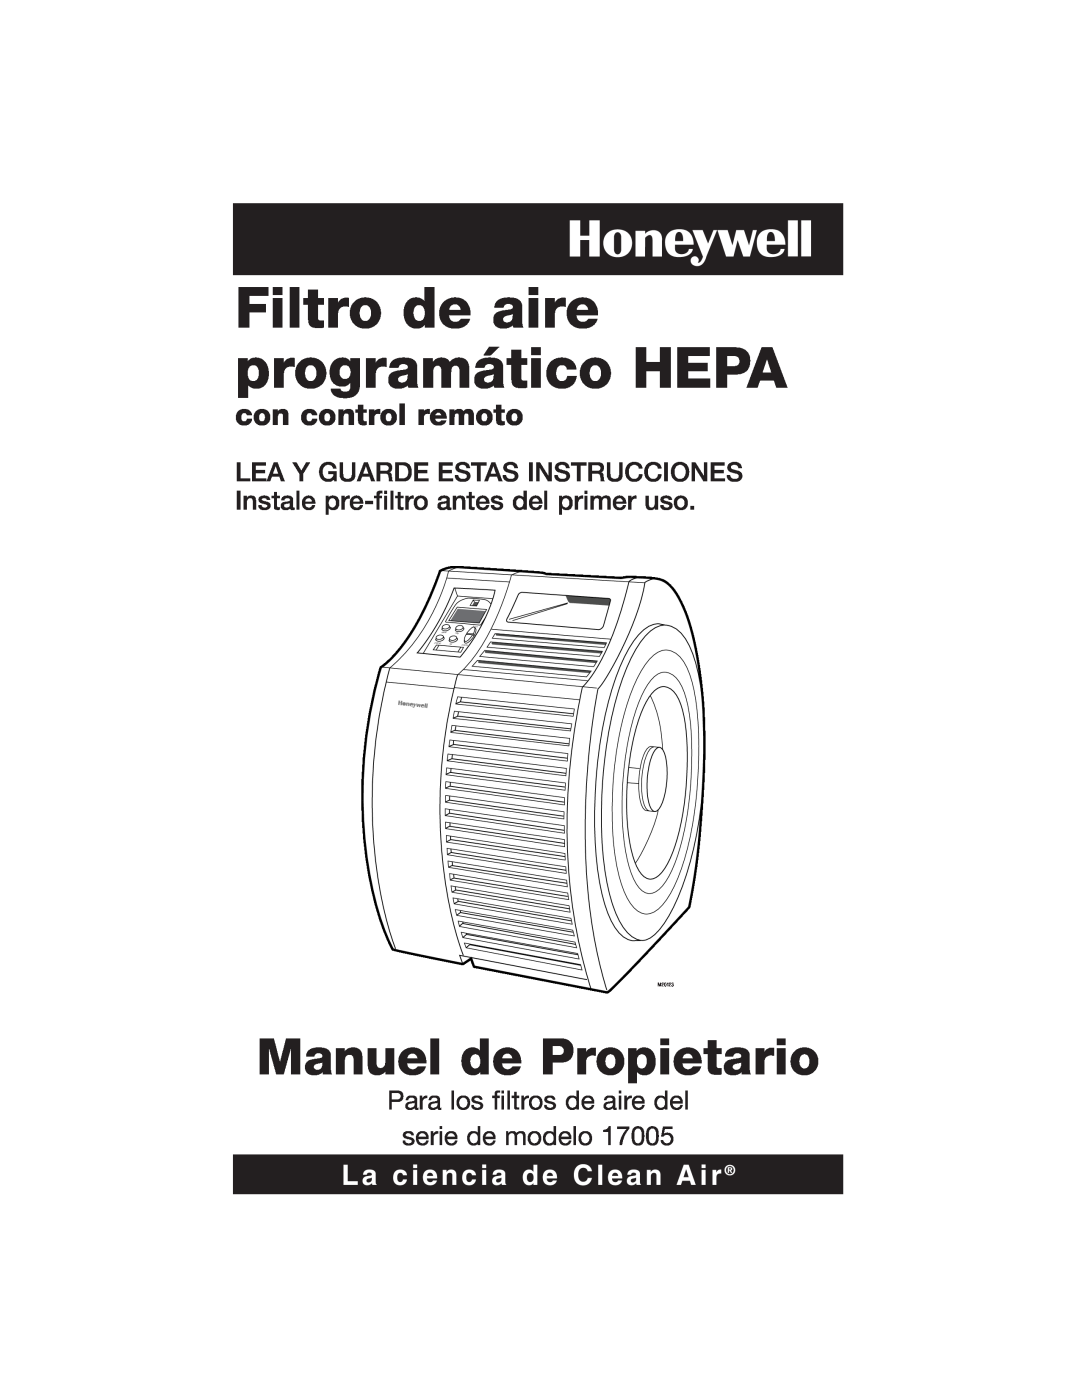 Honeywell 17005 Filtro de aire programático HEPA, Manuel de Propietario, con control remoto, La ciencia de Clean Air 